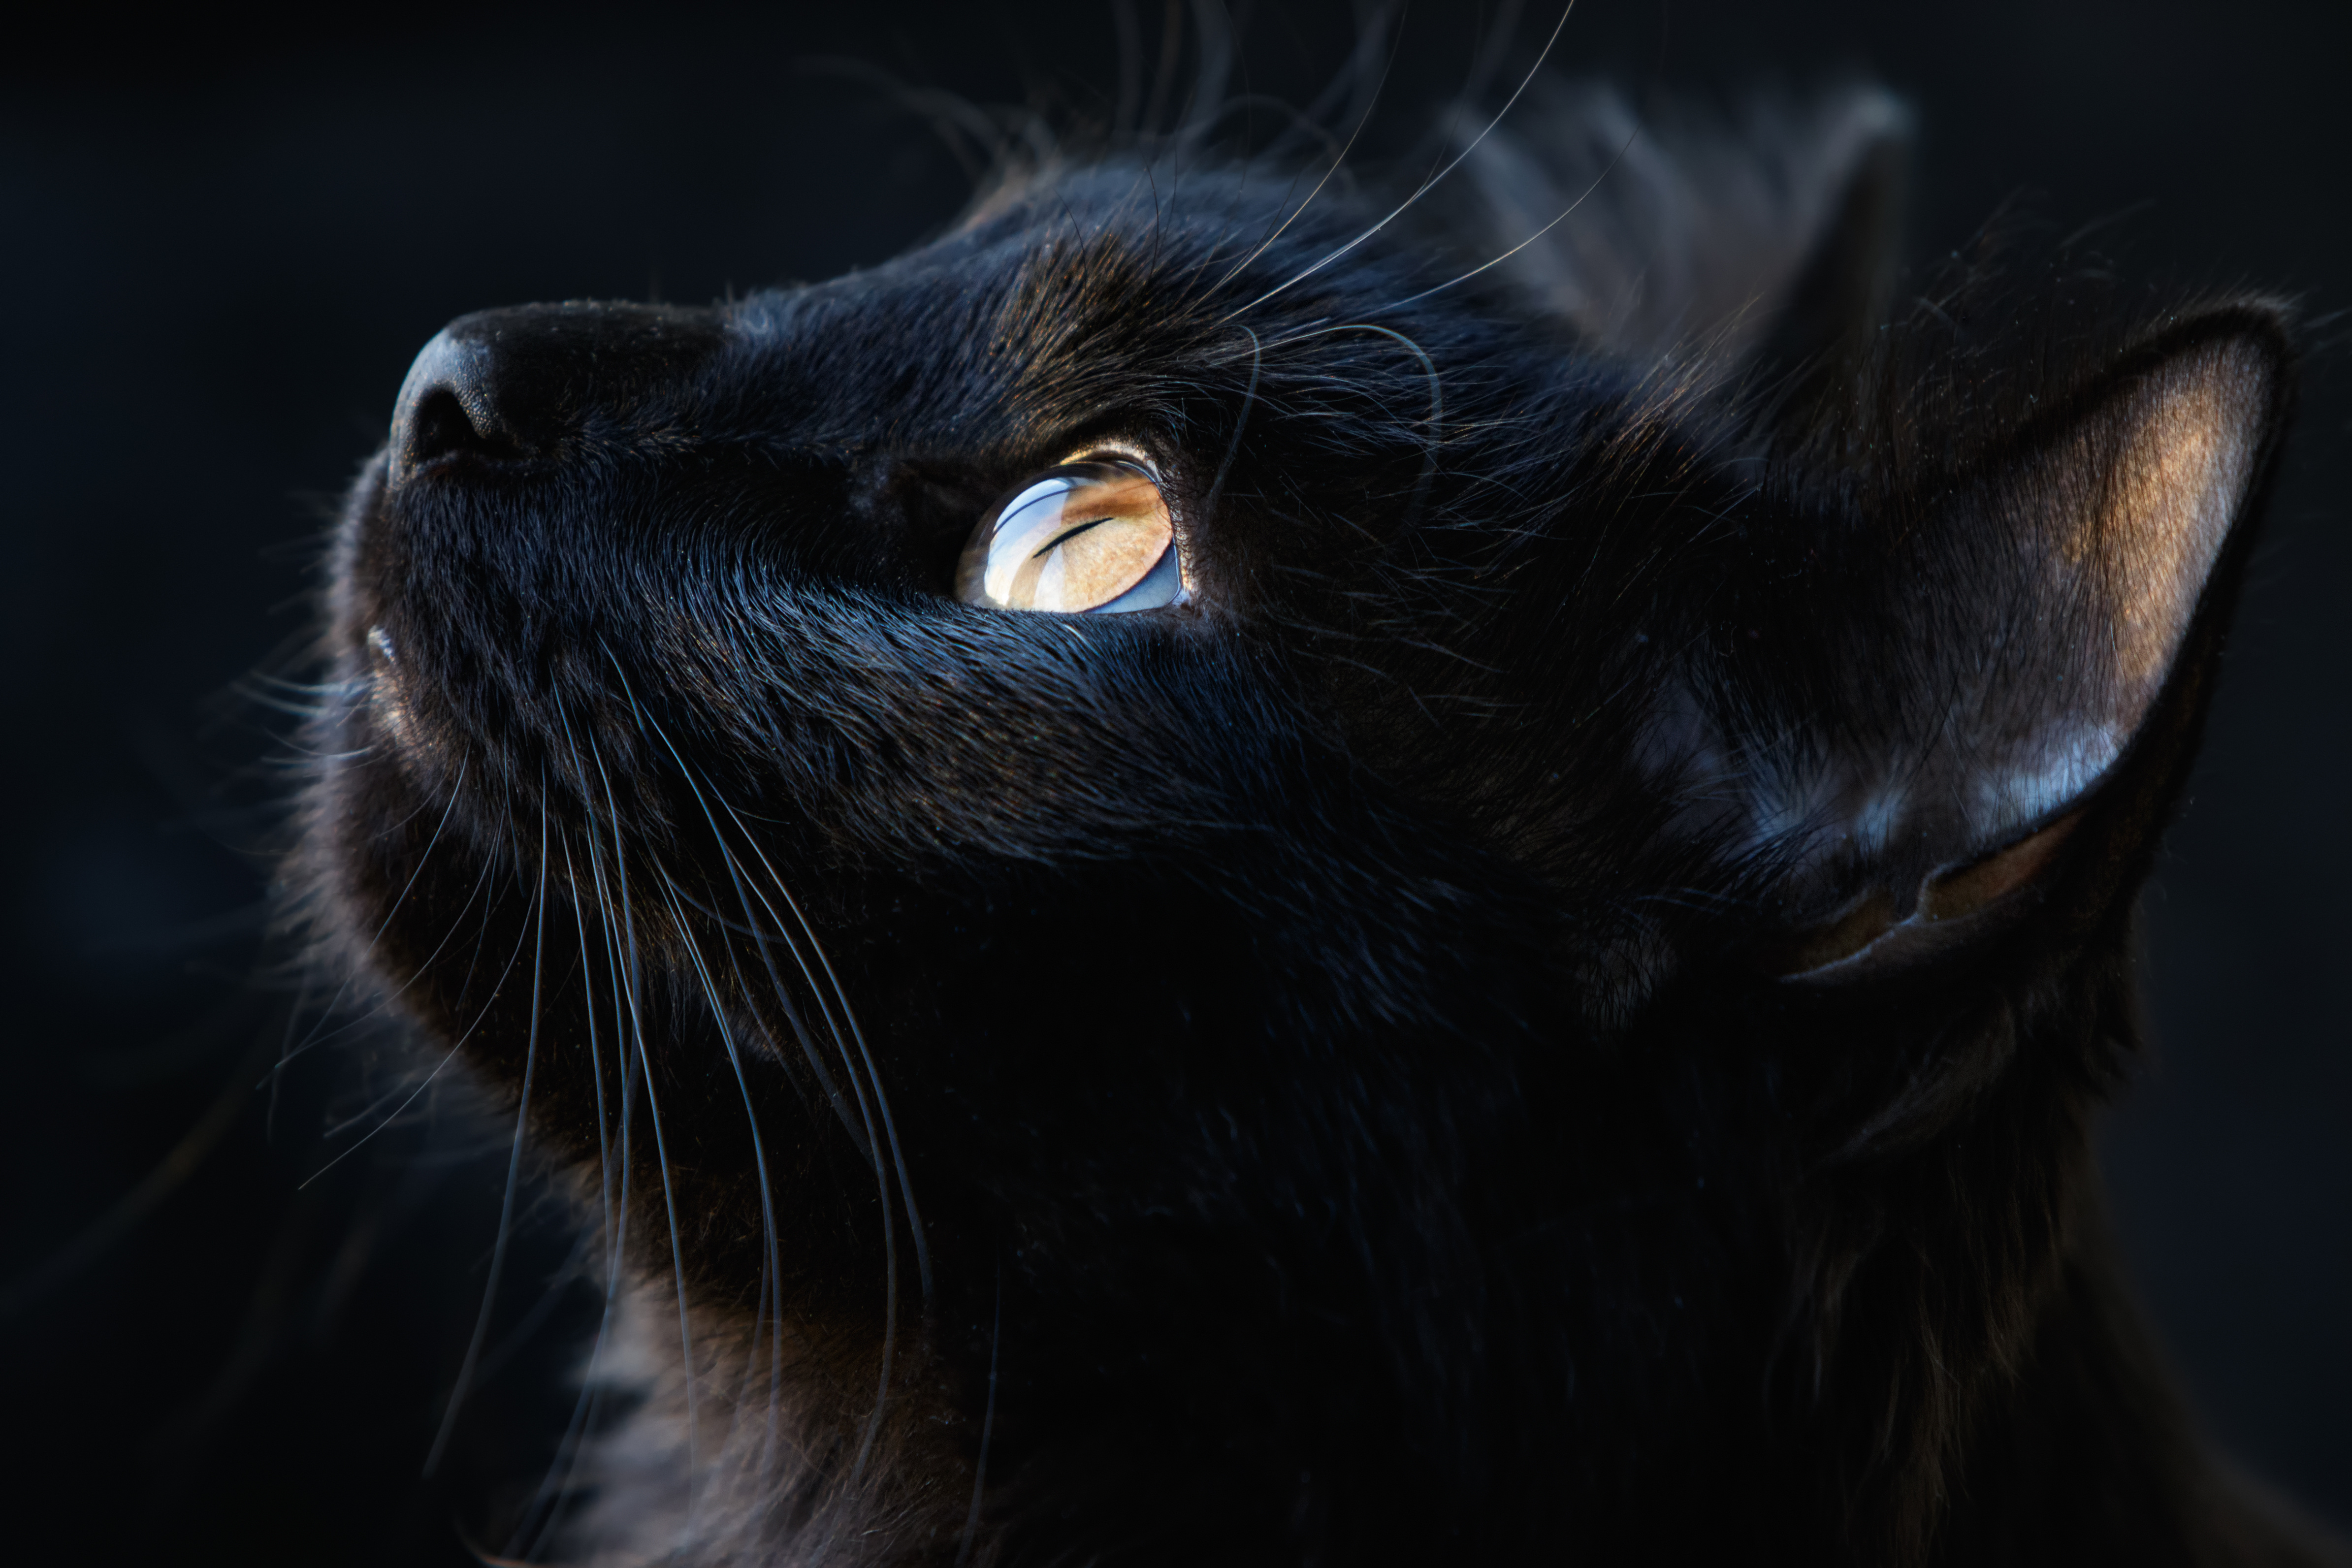 Portrait d'un chat noir. Le chat a une bonne vision dans l'obscurité. © fotogray71, Adobe Stock